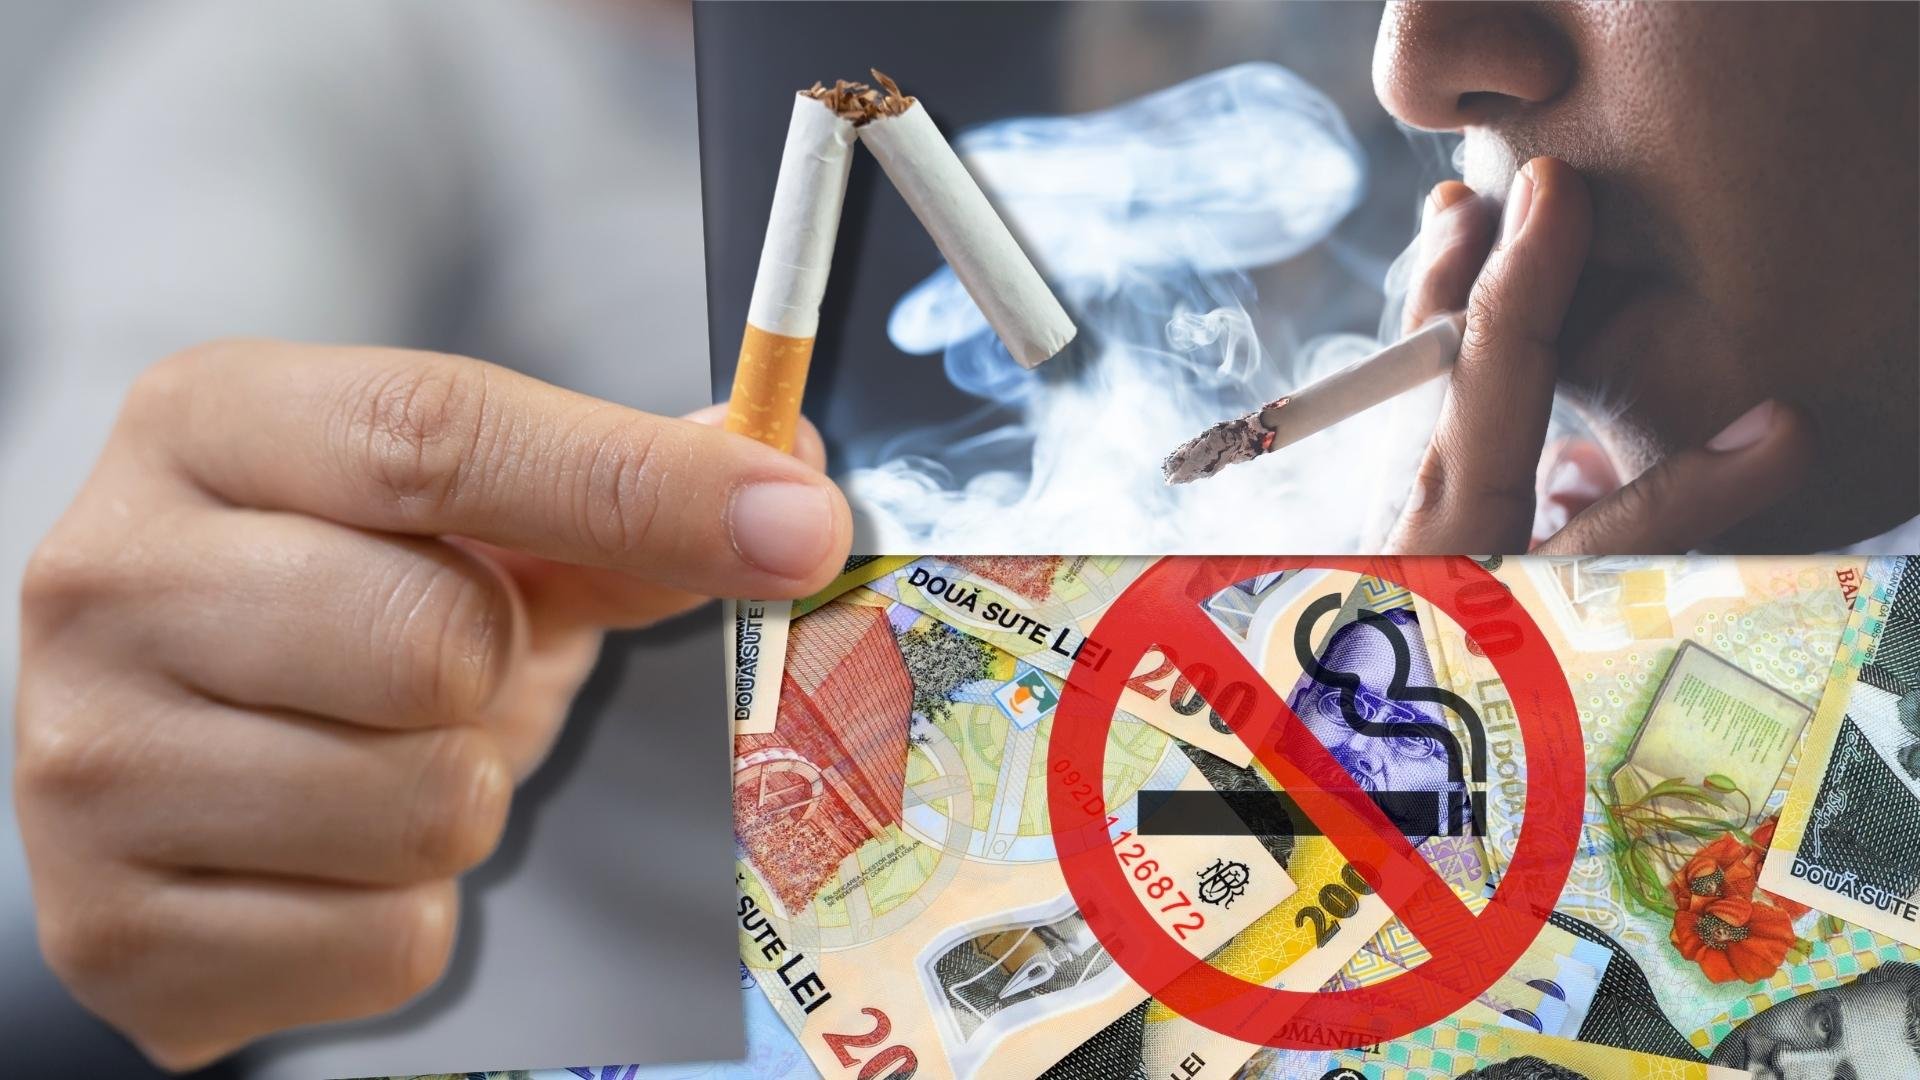  35 de ani: vârsta optimă de a renunța la fumat pentru a evita riscul de deces